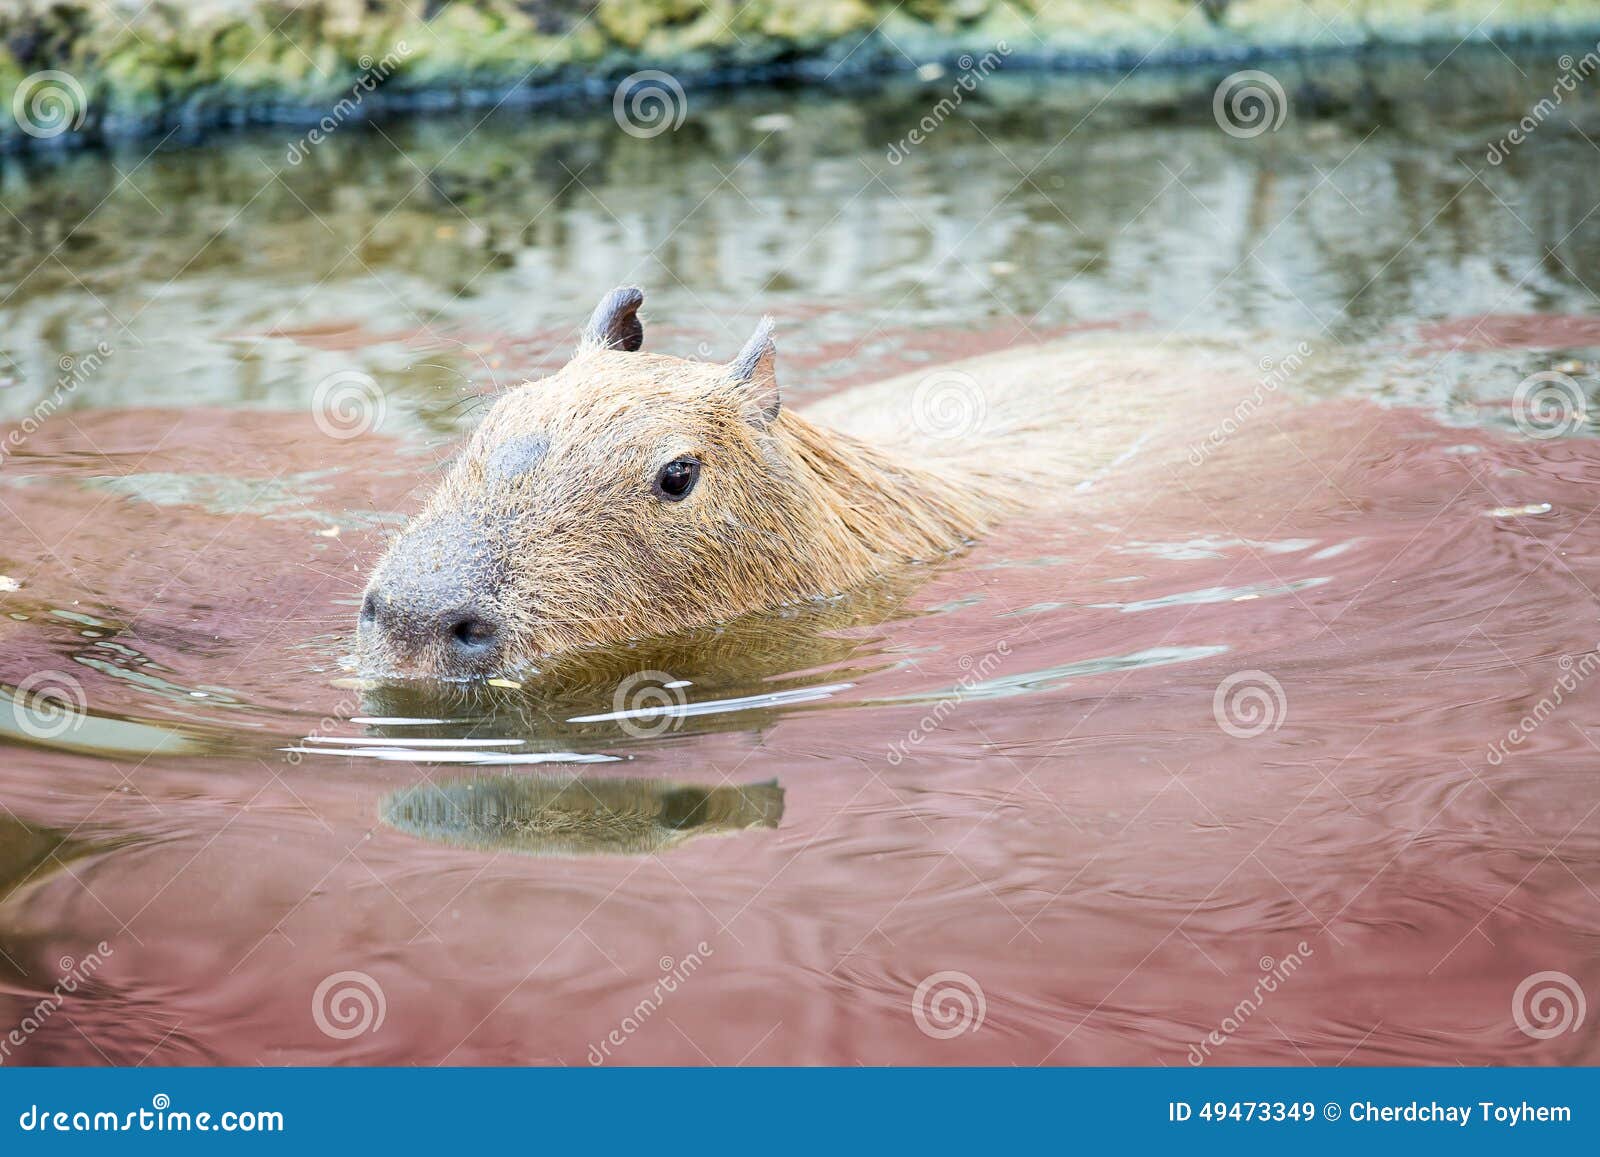 El Capybara (roedor) Está Nadando En La Charca Imagen de archivo - Imagen  de primer, cubo: 49473349